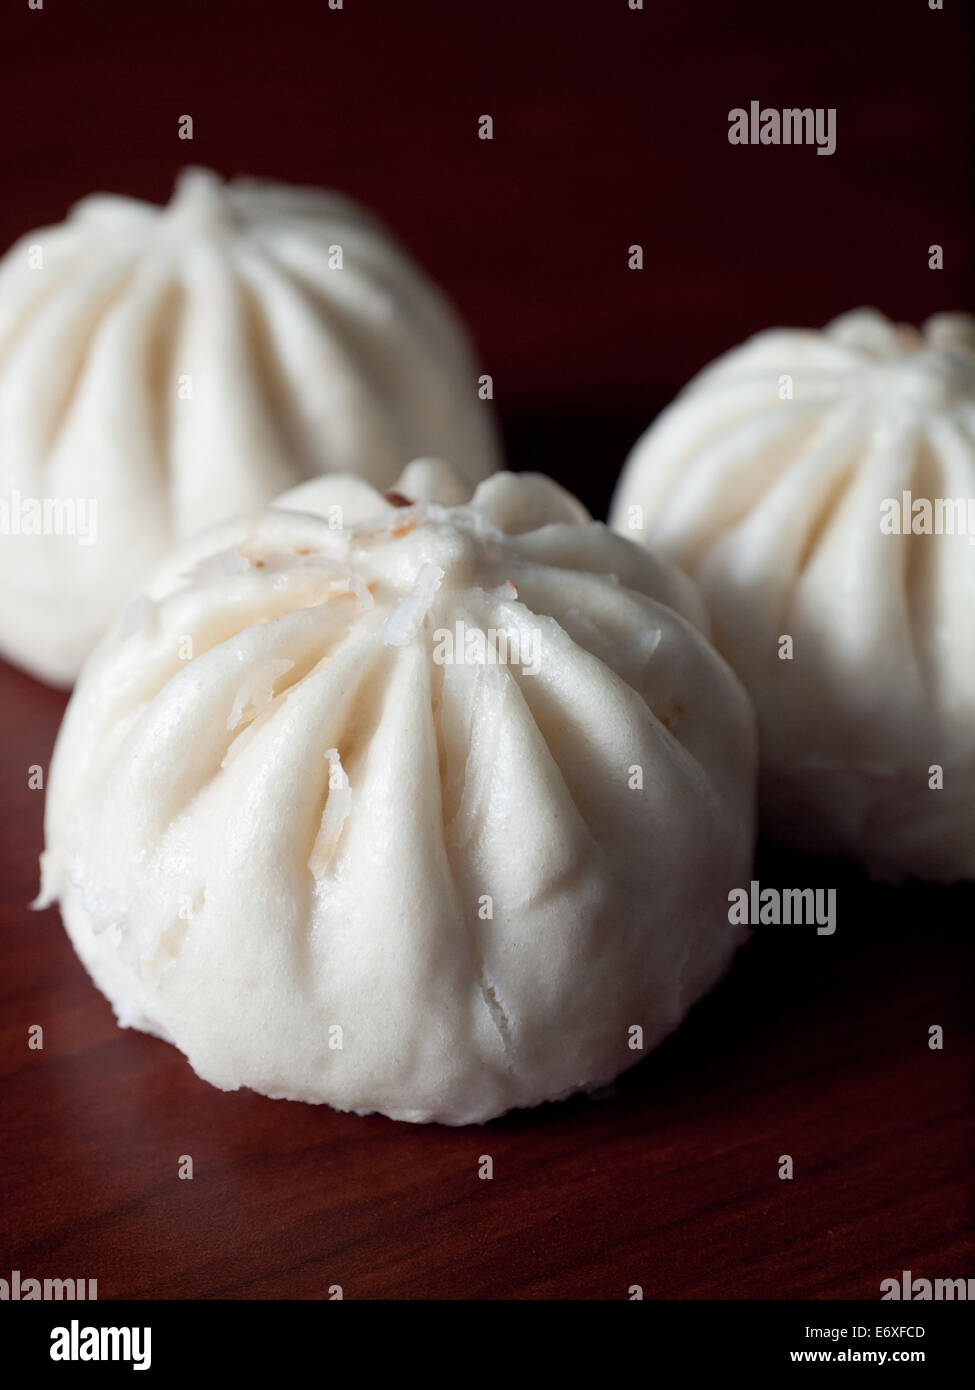 Bao (Baozi), ou un type de Chinese steamed bun. Ceux ci sont de Wow Bao, un restaurant de la région de Chicago Bao. Banque D'Images